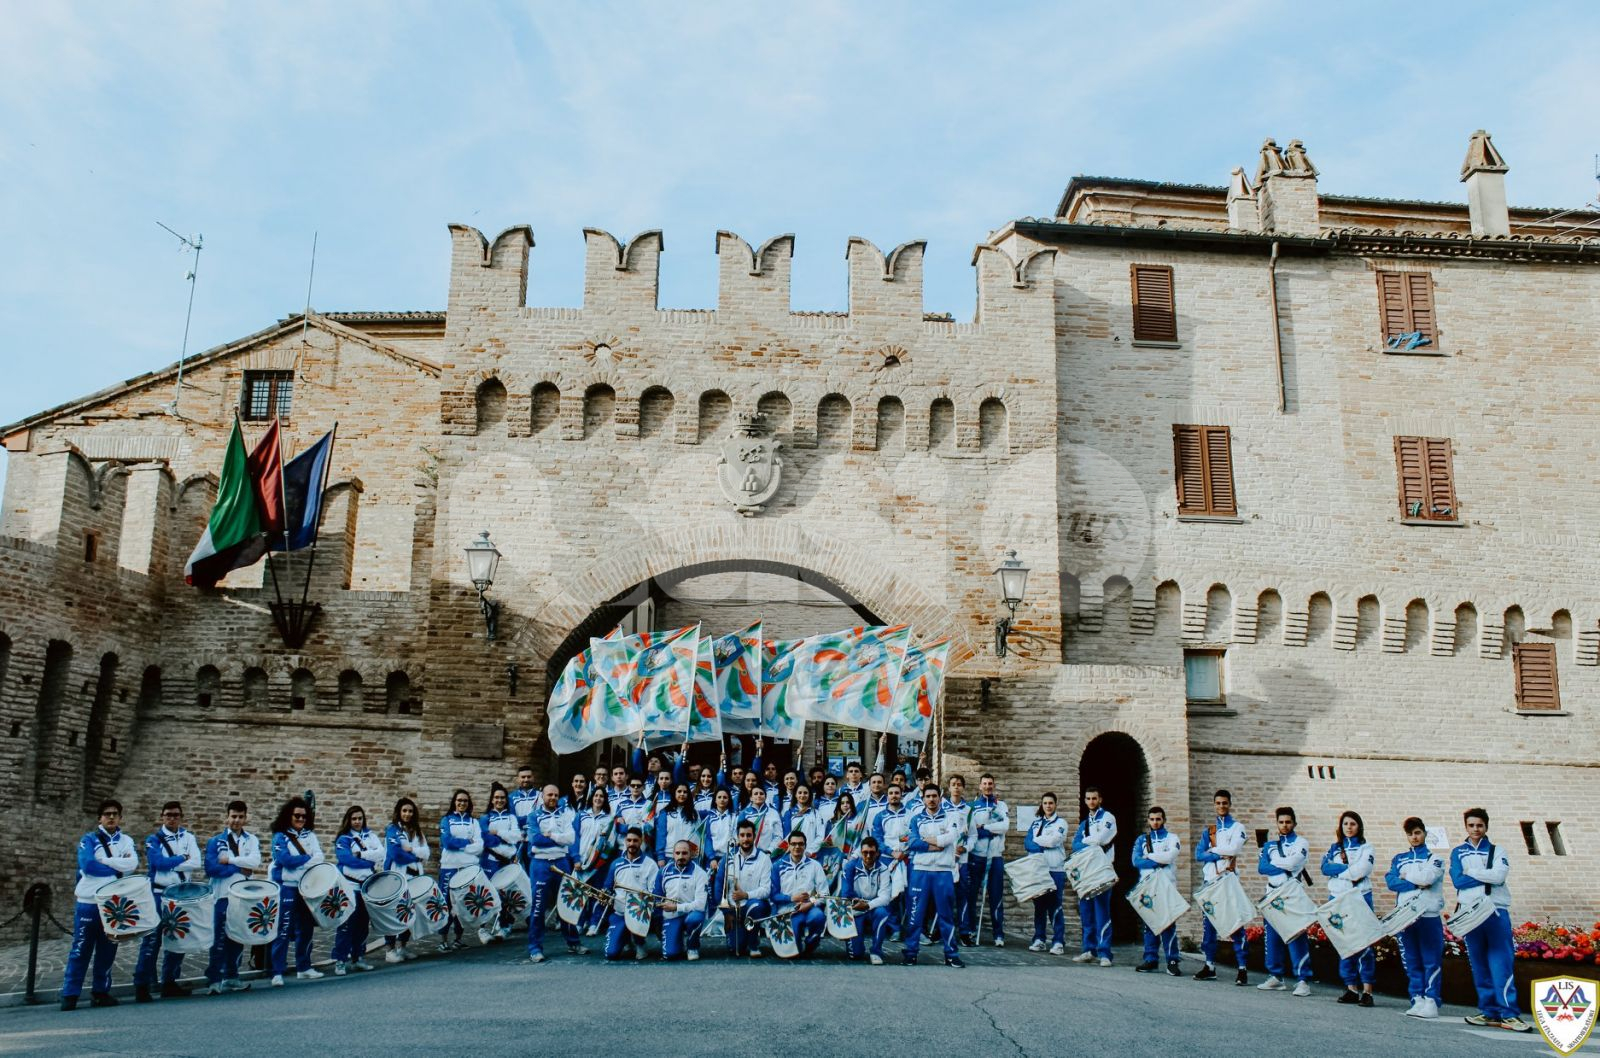 Sbandieratori e musici Lis in piazza ad Assisi per "Passioni e Radici"